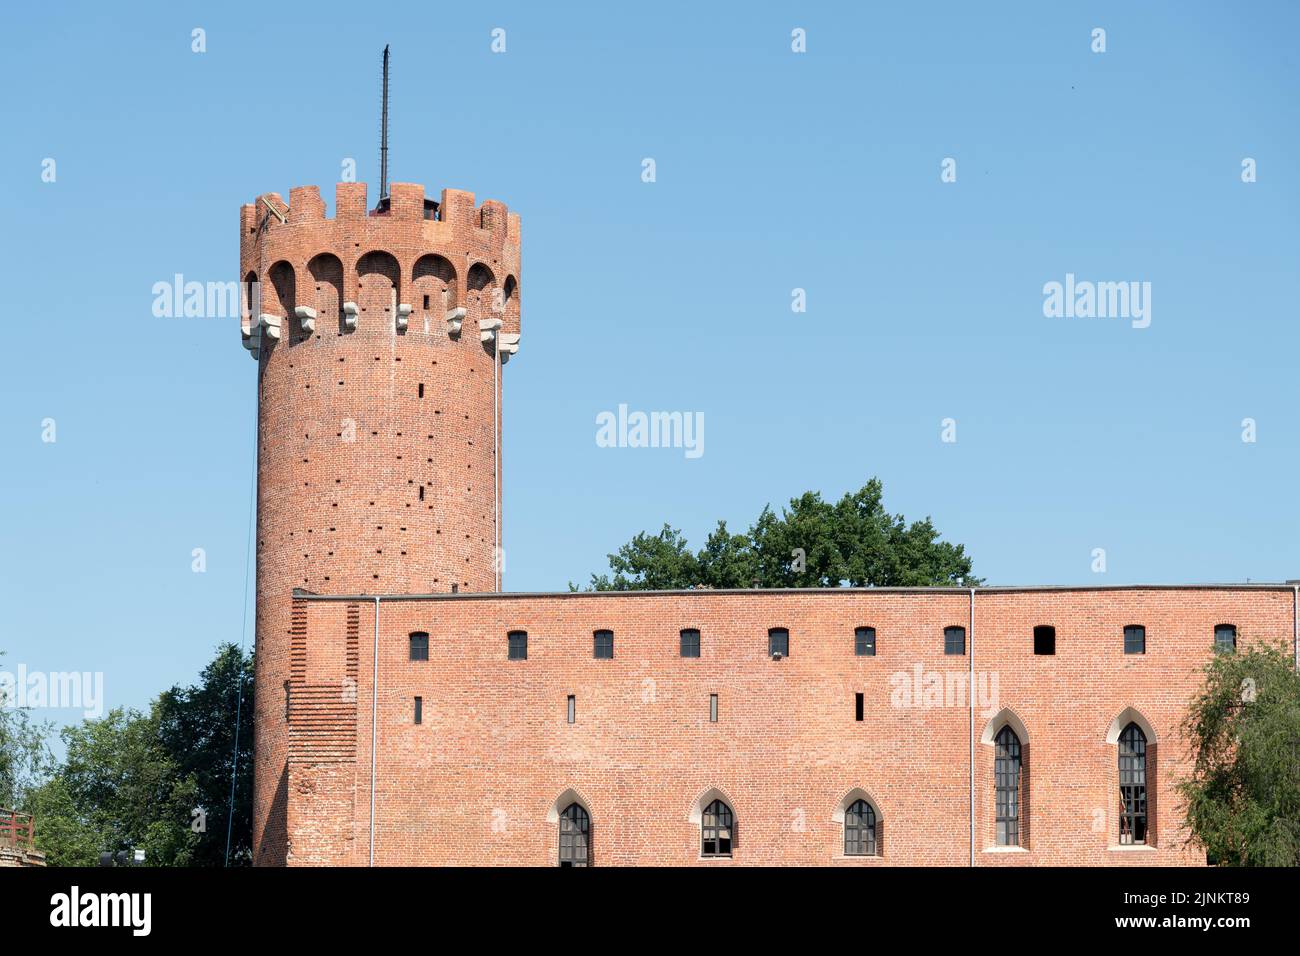 Ruinas del castillo de la Orden Teutónica en Swiecie, Polonia © Wojciech Strozyk / Alamy Stock Photo *** Local Caption *** Foto de stock